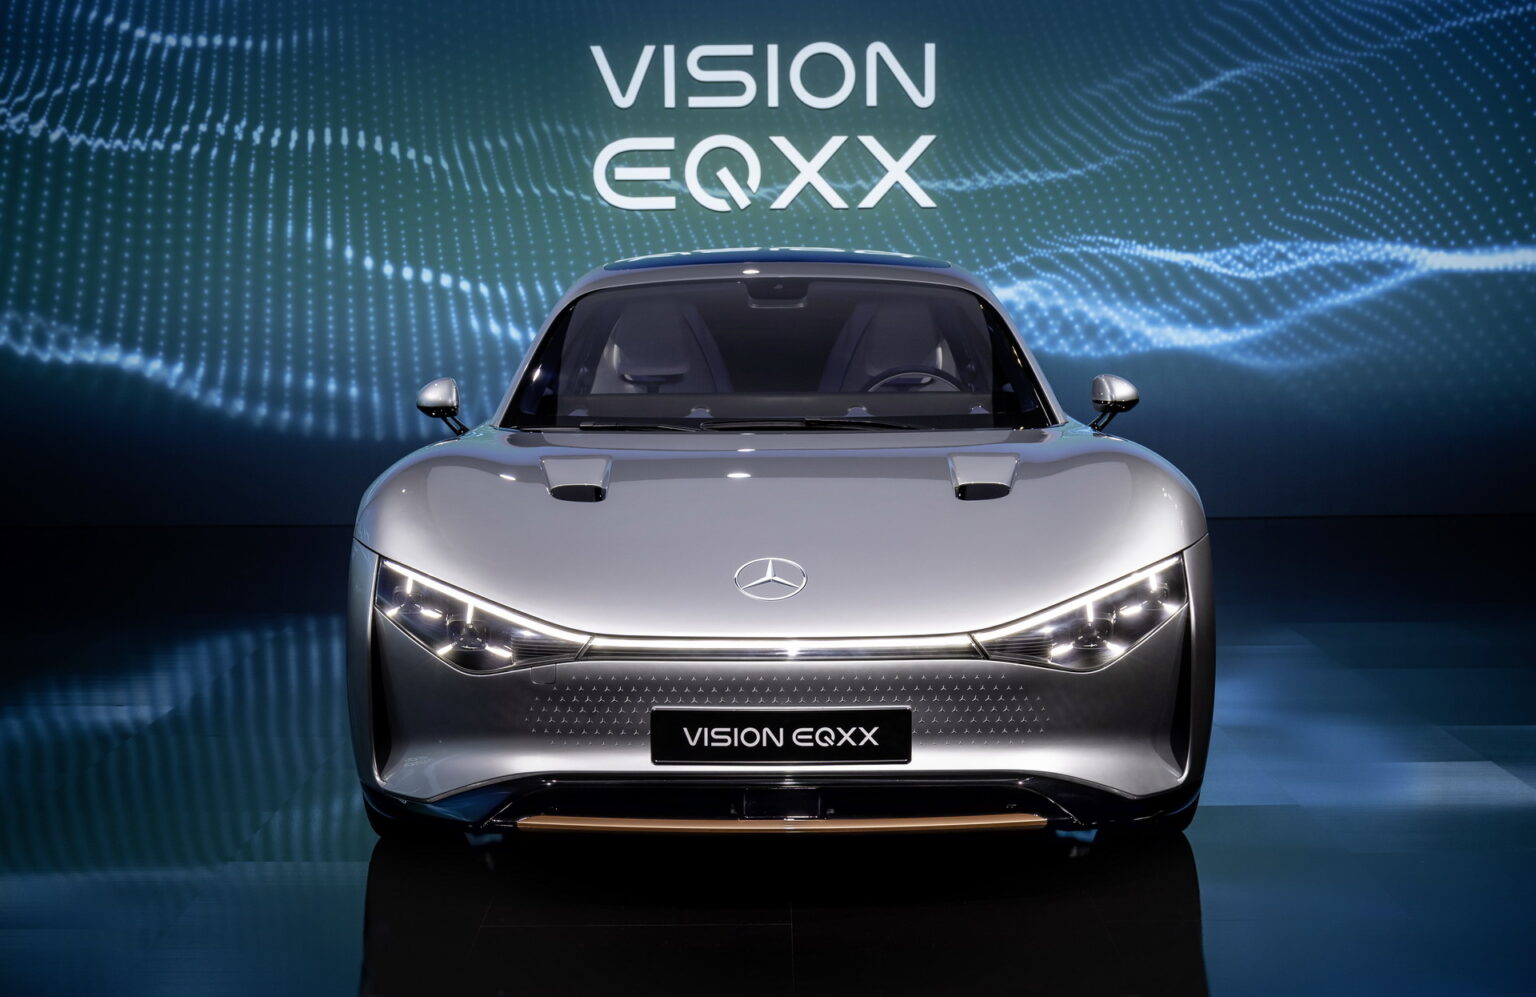 مرسيدس تكشف عن سيارة فيجن EQXX “الأعلى كفاءة في العالم”